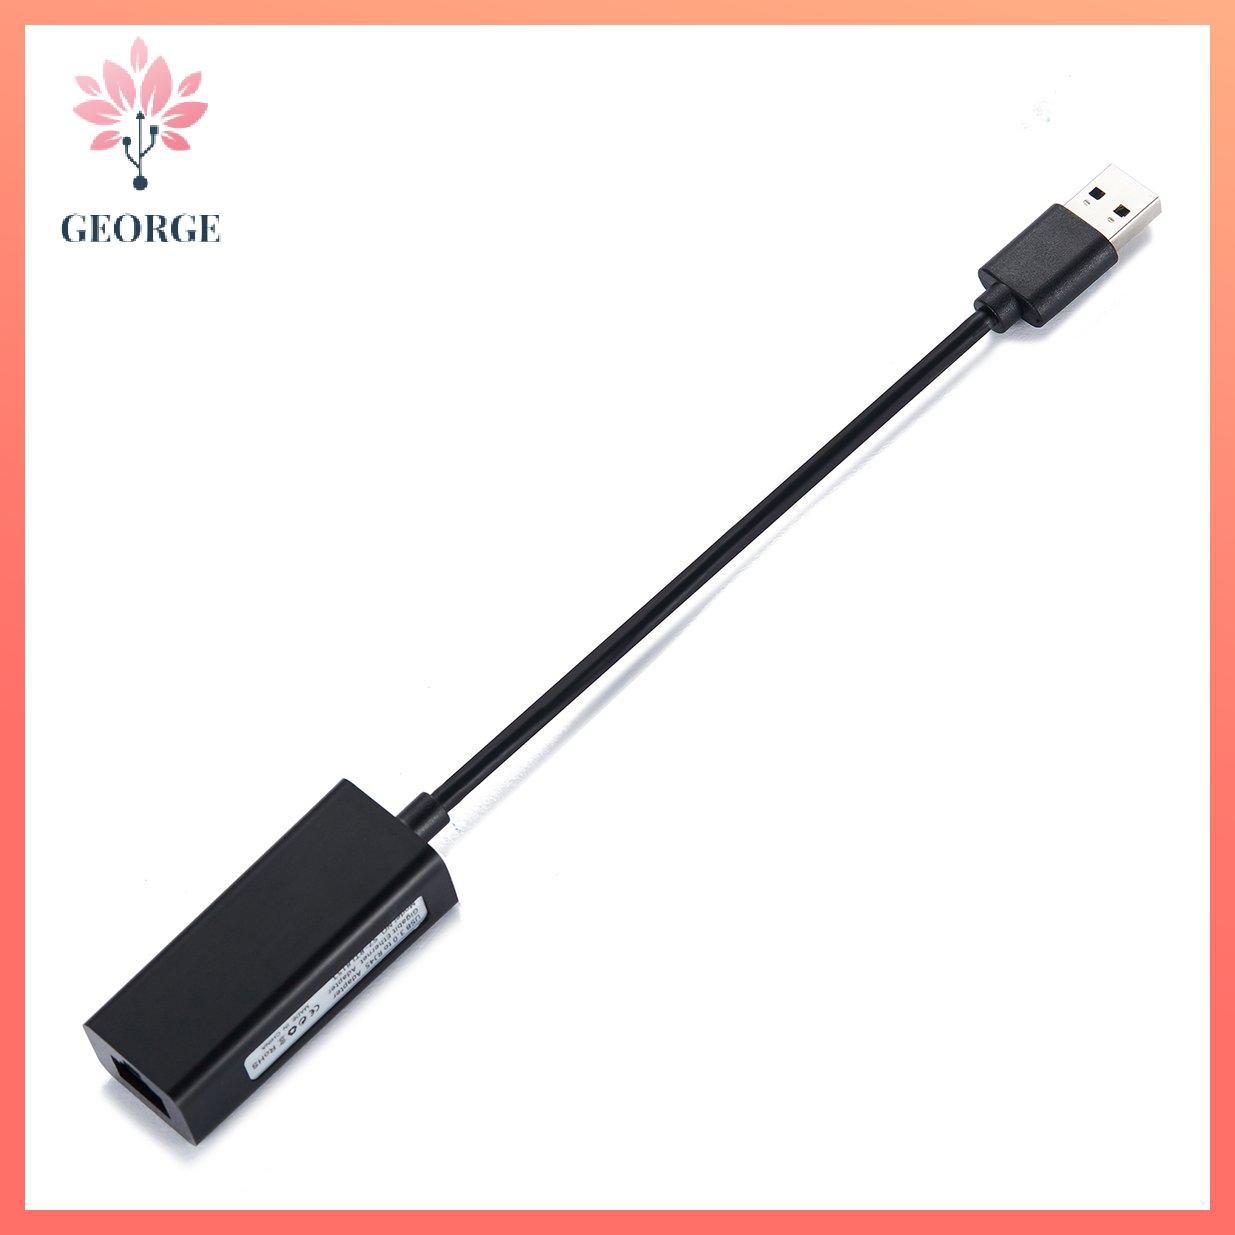 [G]Đầu chuyển USB ra Lan 2.0 - Cáp chuyển USB sang đầu cắm dây mạng, Bộ chuyển đổi USB ra LAN RJ45 USB 2.0 to fast Ethernet